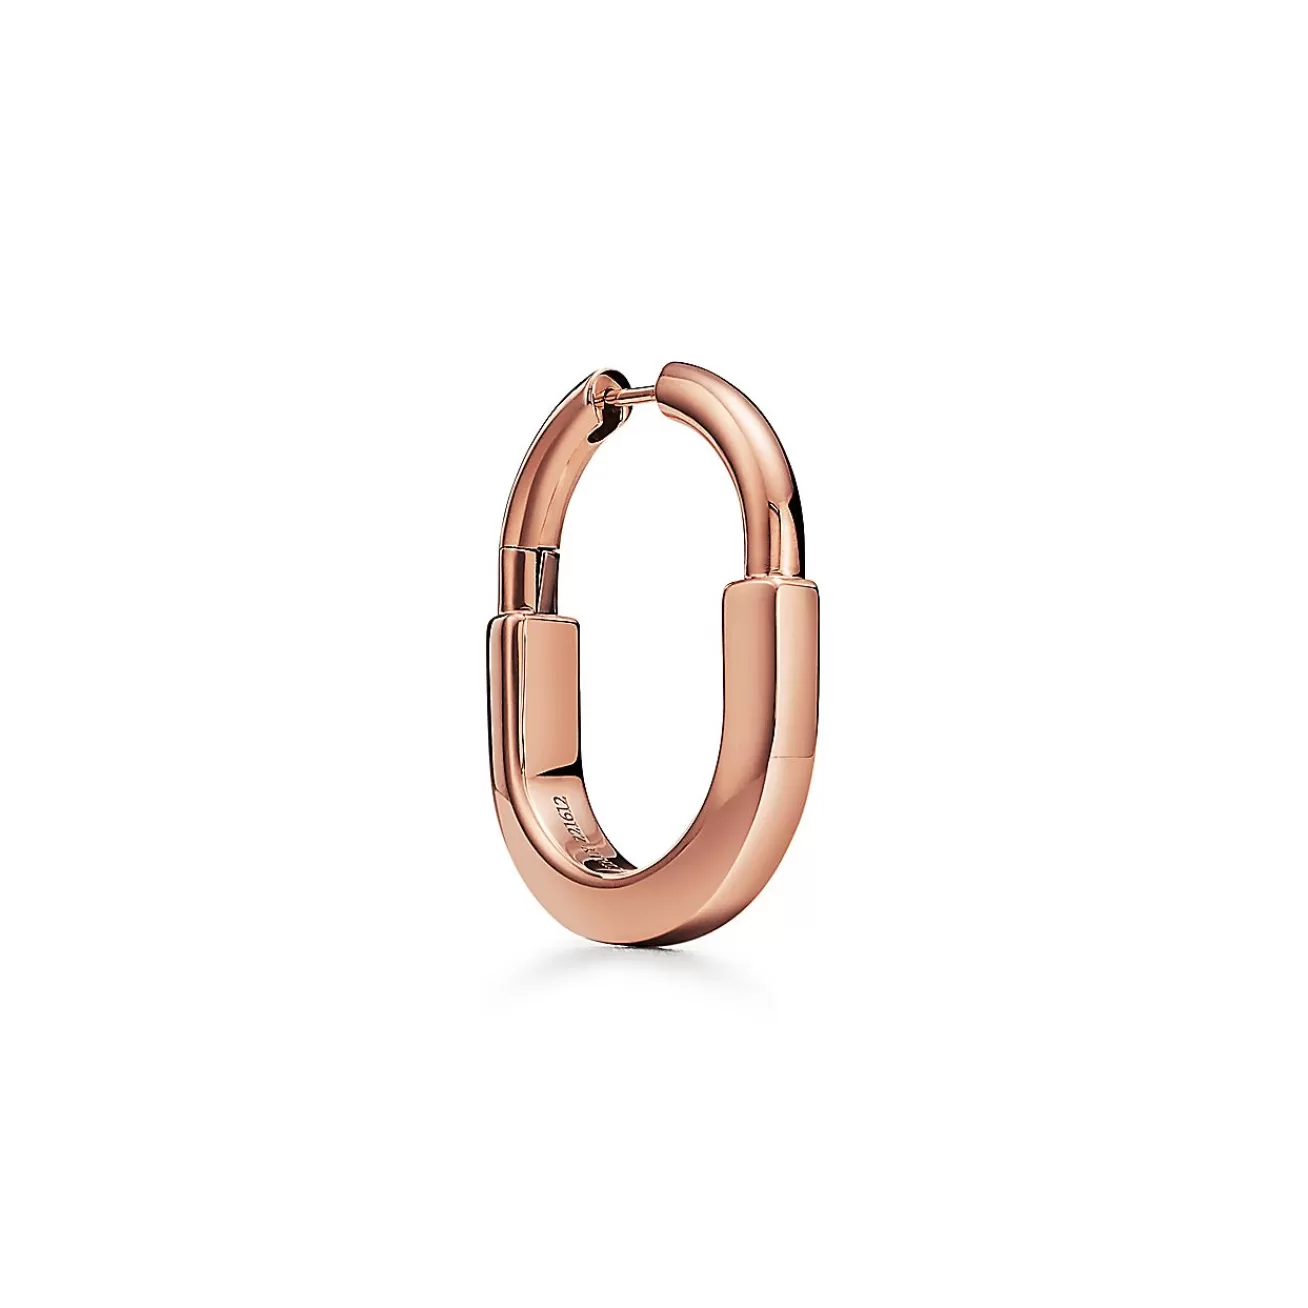 Tiffany & Co. Tiffany Lock Earrings in Rose Gold, Medium | ^ Earrings | Hoop Earrings